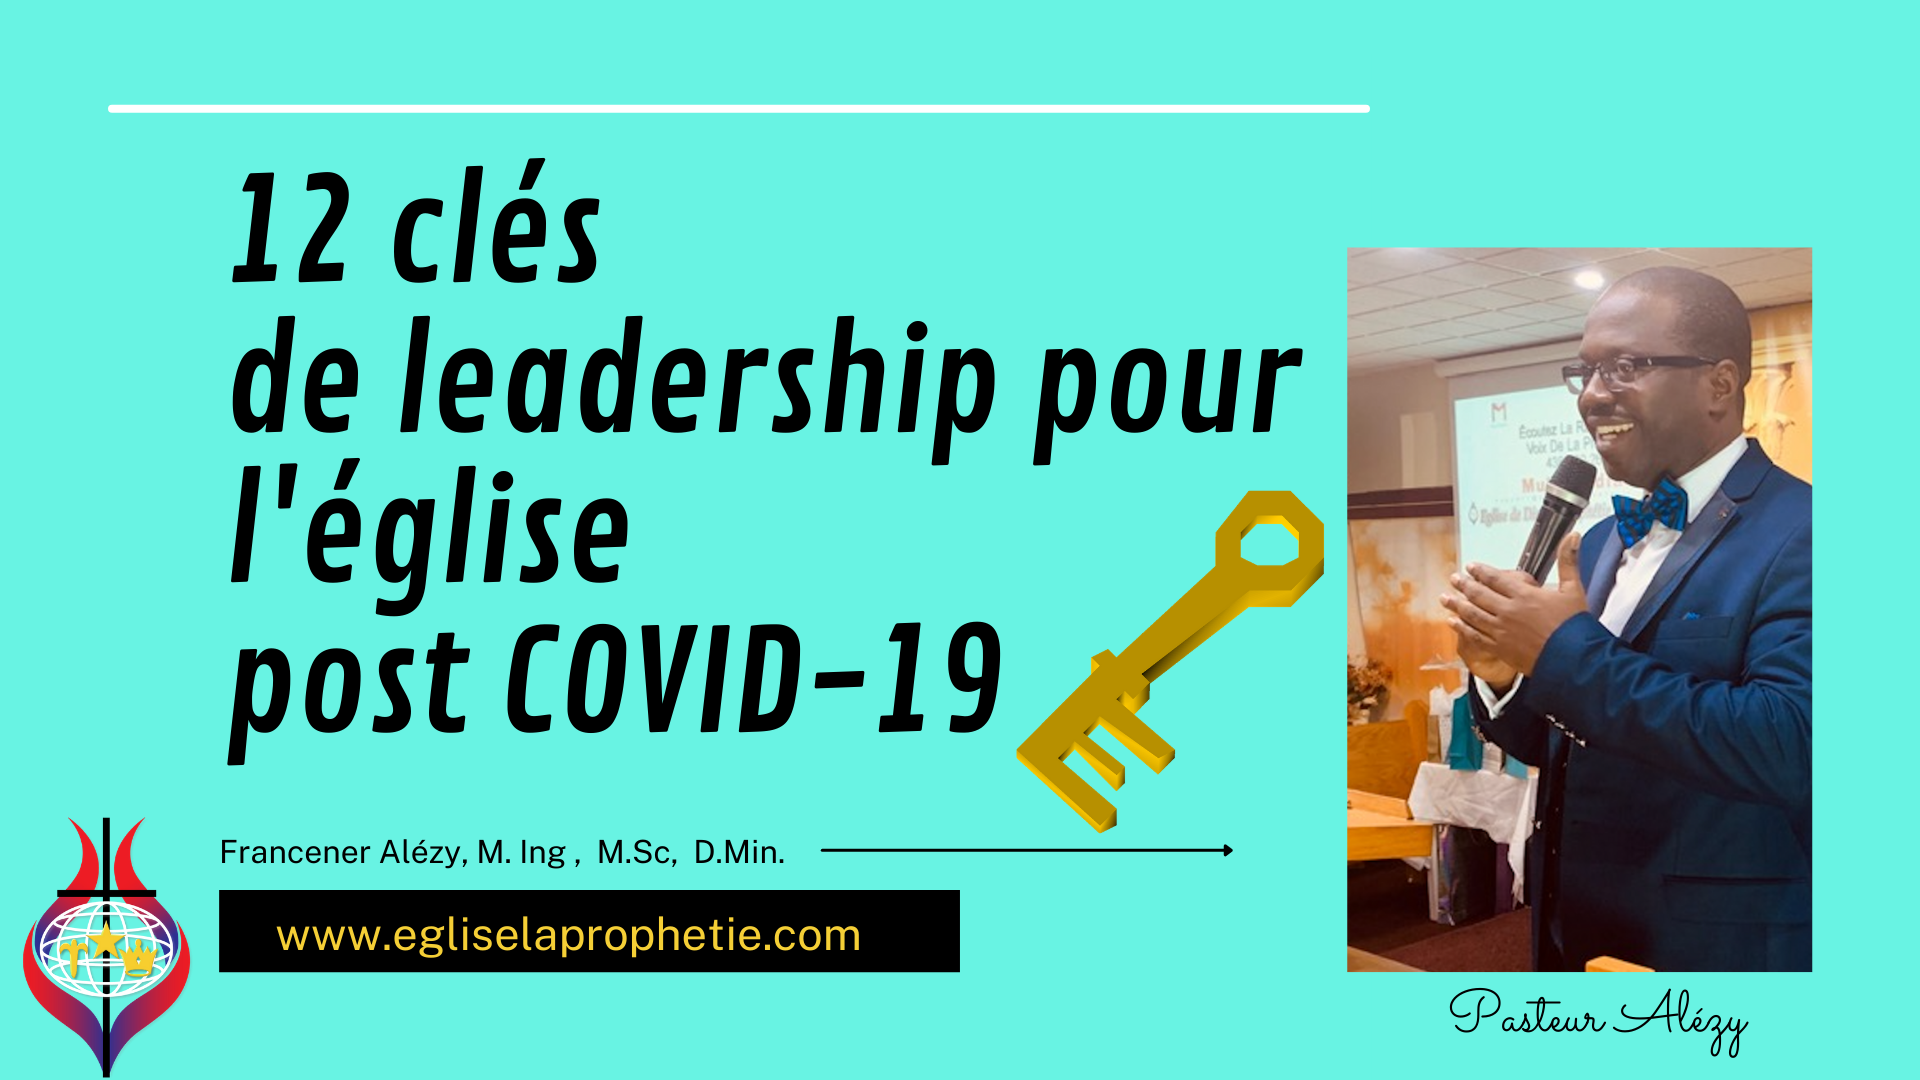 12 clés  de leadership pour l'église  post COVID-19